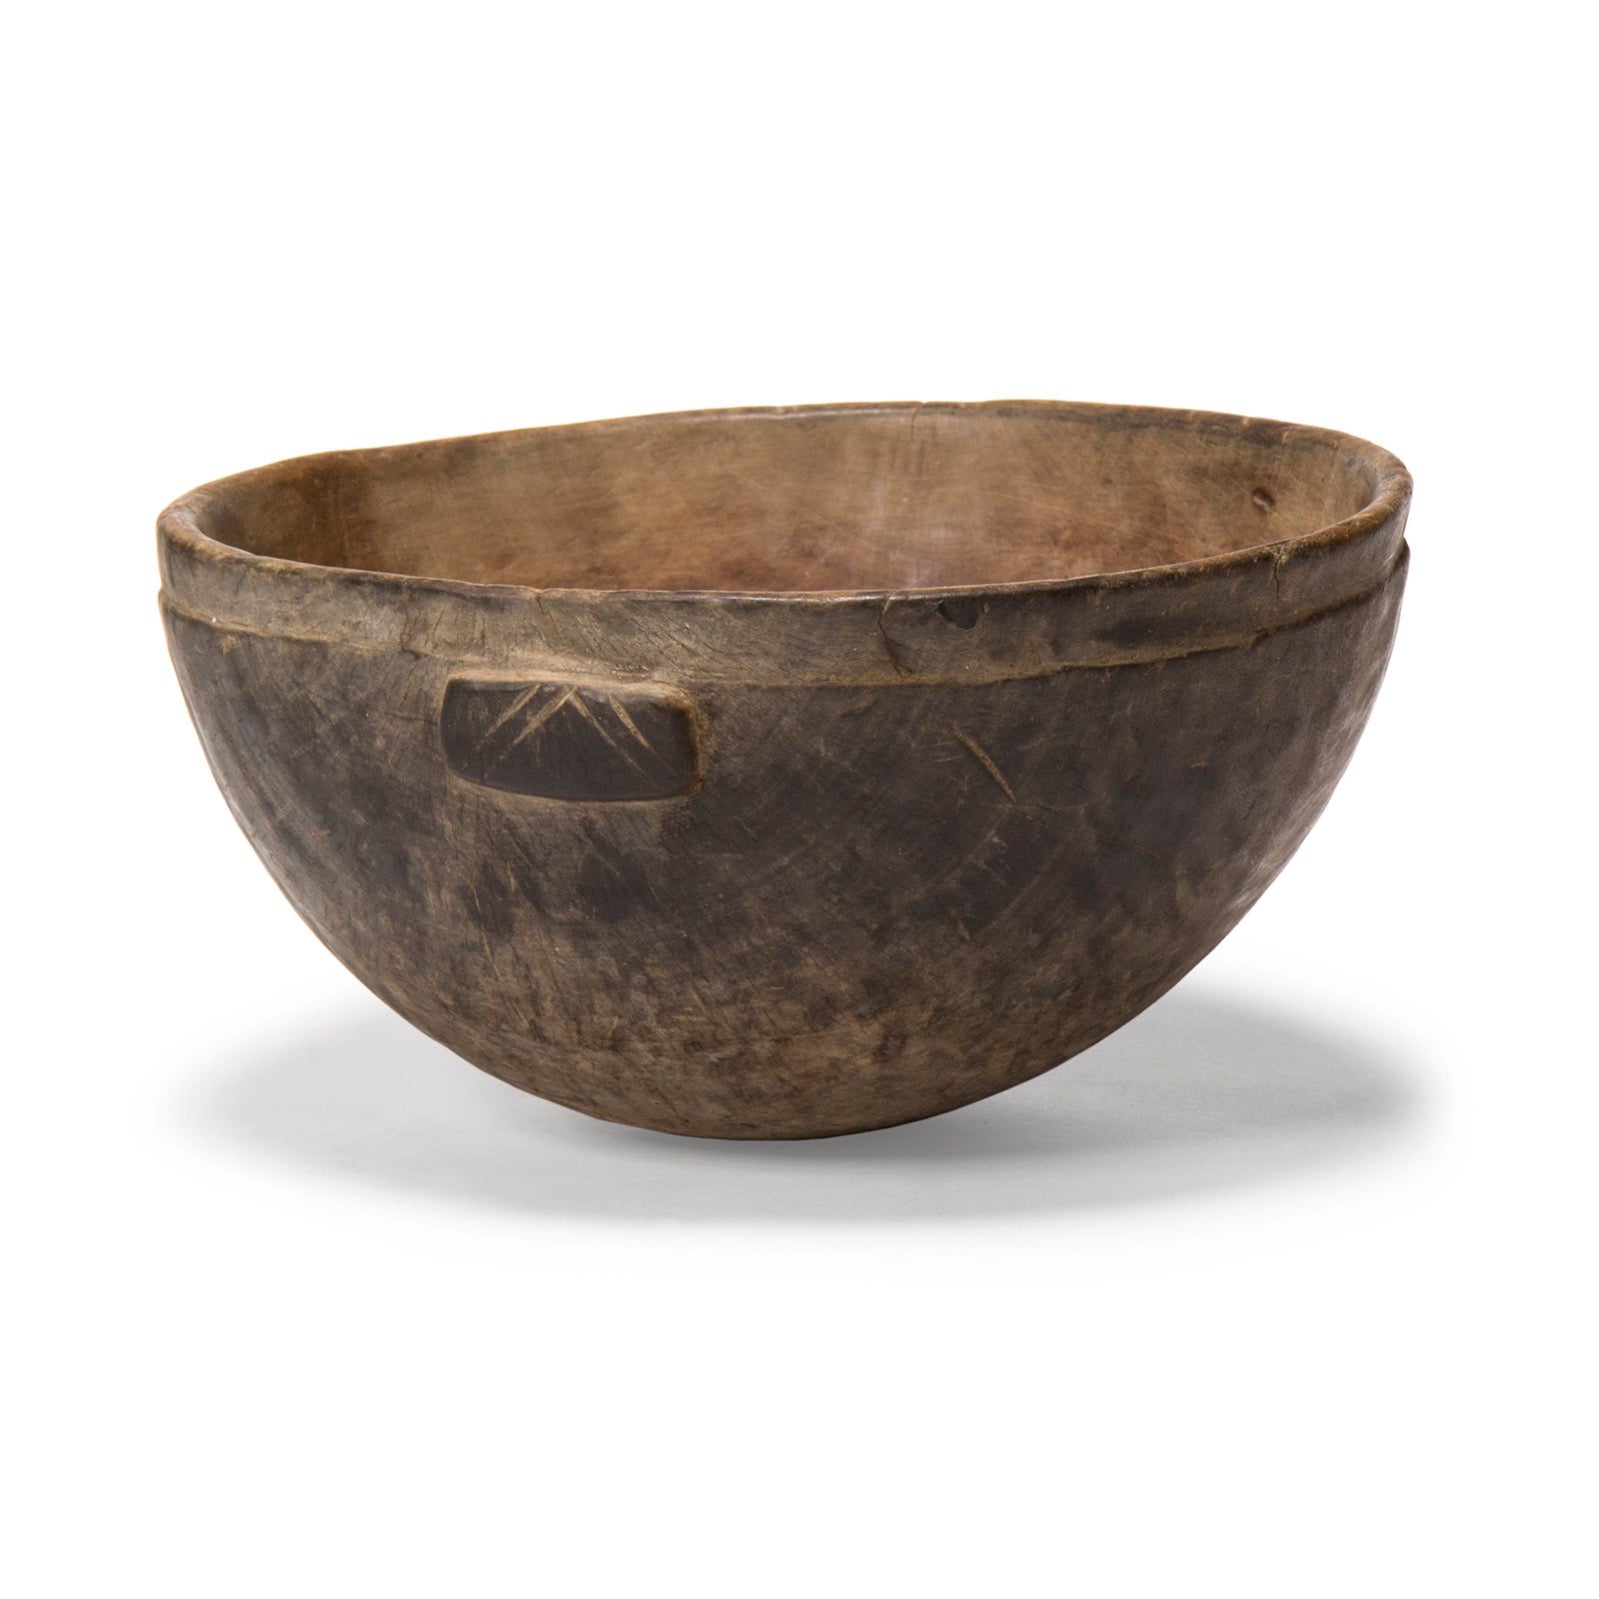 Primitive Bowl from Ethiopia